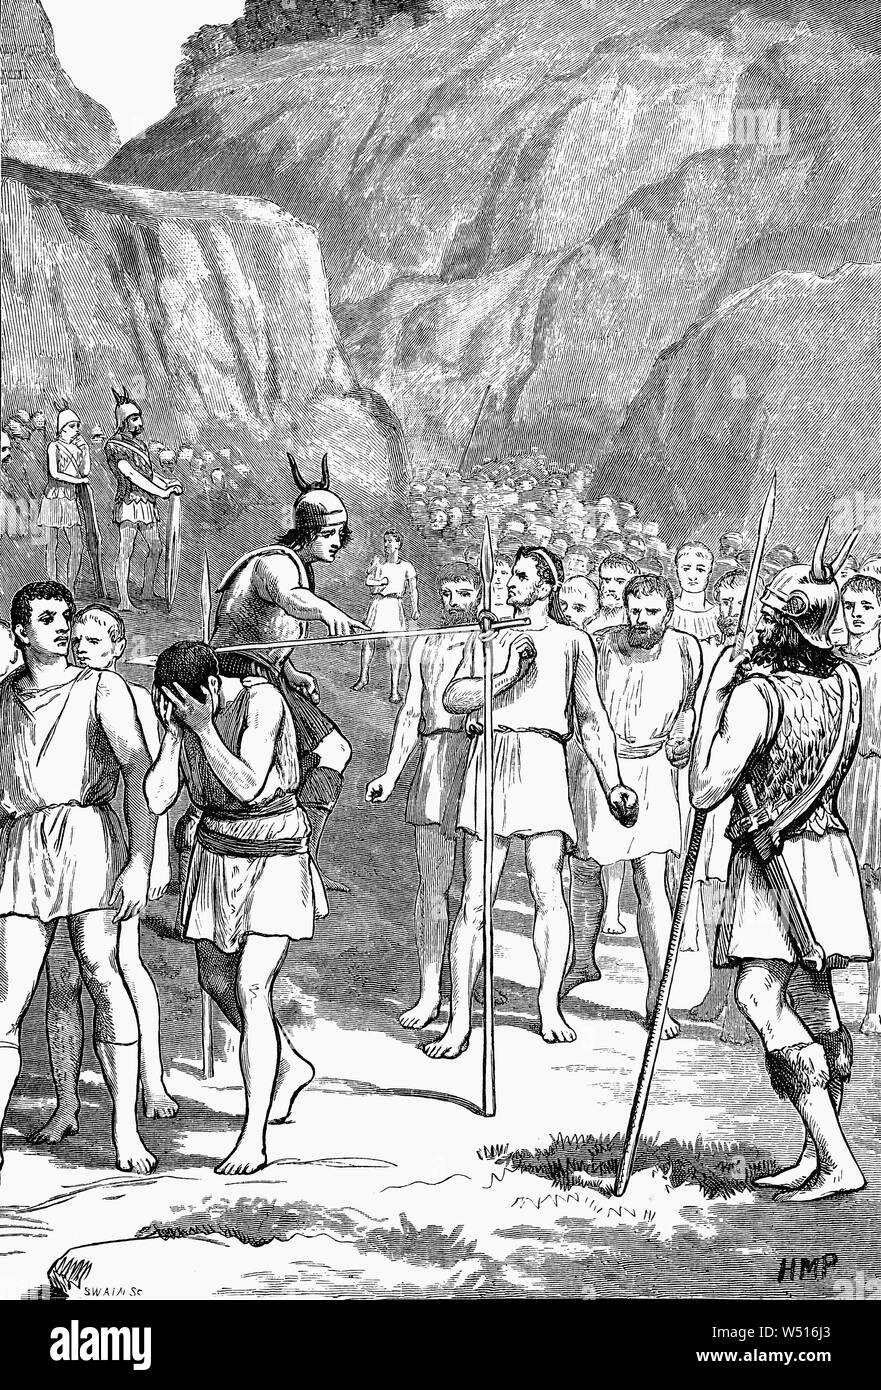 Die Schlacht von Caudine Forks, 321 v. Chr., war ein entscheidendes Ereignis des Zweiten Samnite Krieg, in dem die Römer in einem eingeschlossenen Tal in der Nähe von CAUDIUM an der Via Appia in der Nähe von Kampanien gefangen waren, Süditalien von den Samniten. Richter und Staatsanwälte auf beiden Seiten versucht, die besten Konditionen für Ihre Seite zu bekommen und zwar unter Beachtung der Bestimmungen des Krieges und die Durchführung des Friedens. Am Ende waren die Samniten entschieden, dass es für die künftigen Beziehungen besser sein zu lassen die Römer gehen, während in ihrer Kampagne gegen die Samniten durch Ehre behindert. Stockfoto